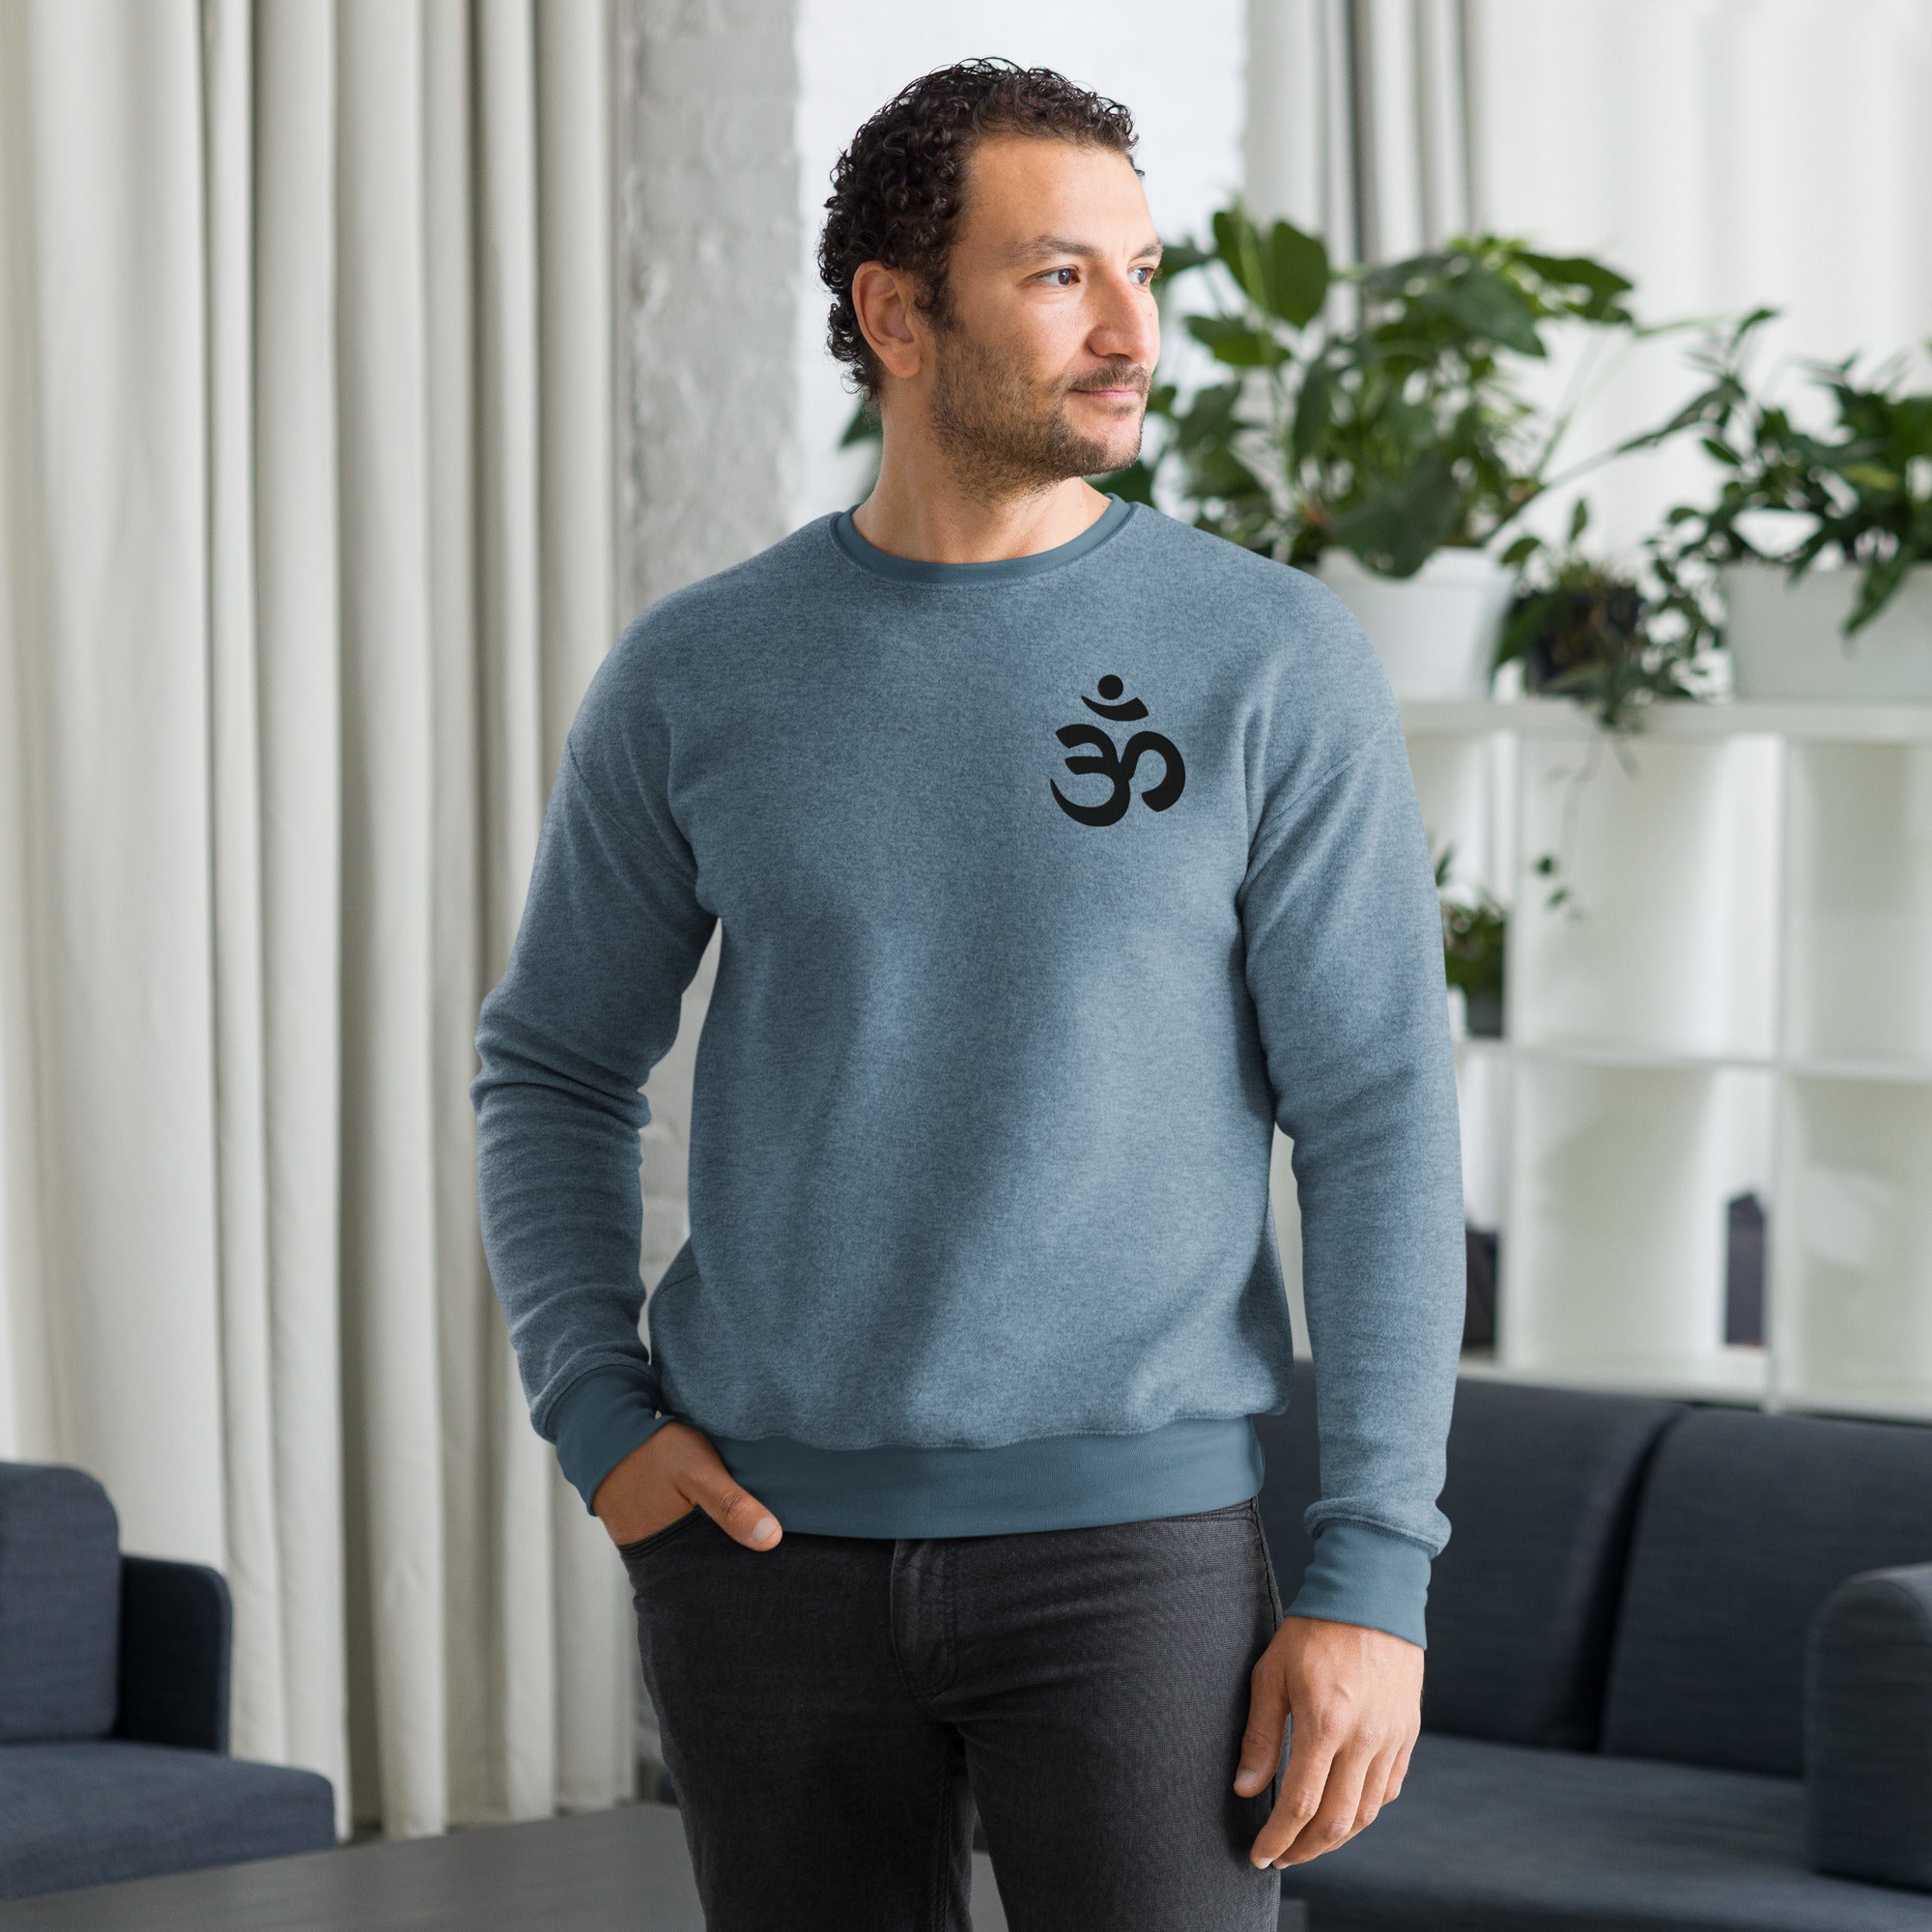 Couple Matching - Unisex sueded fleece yoga sweatshirt